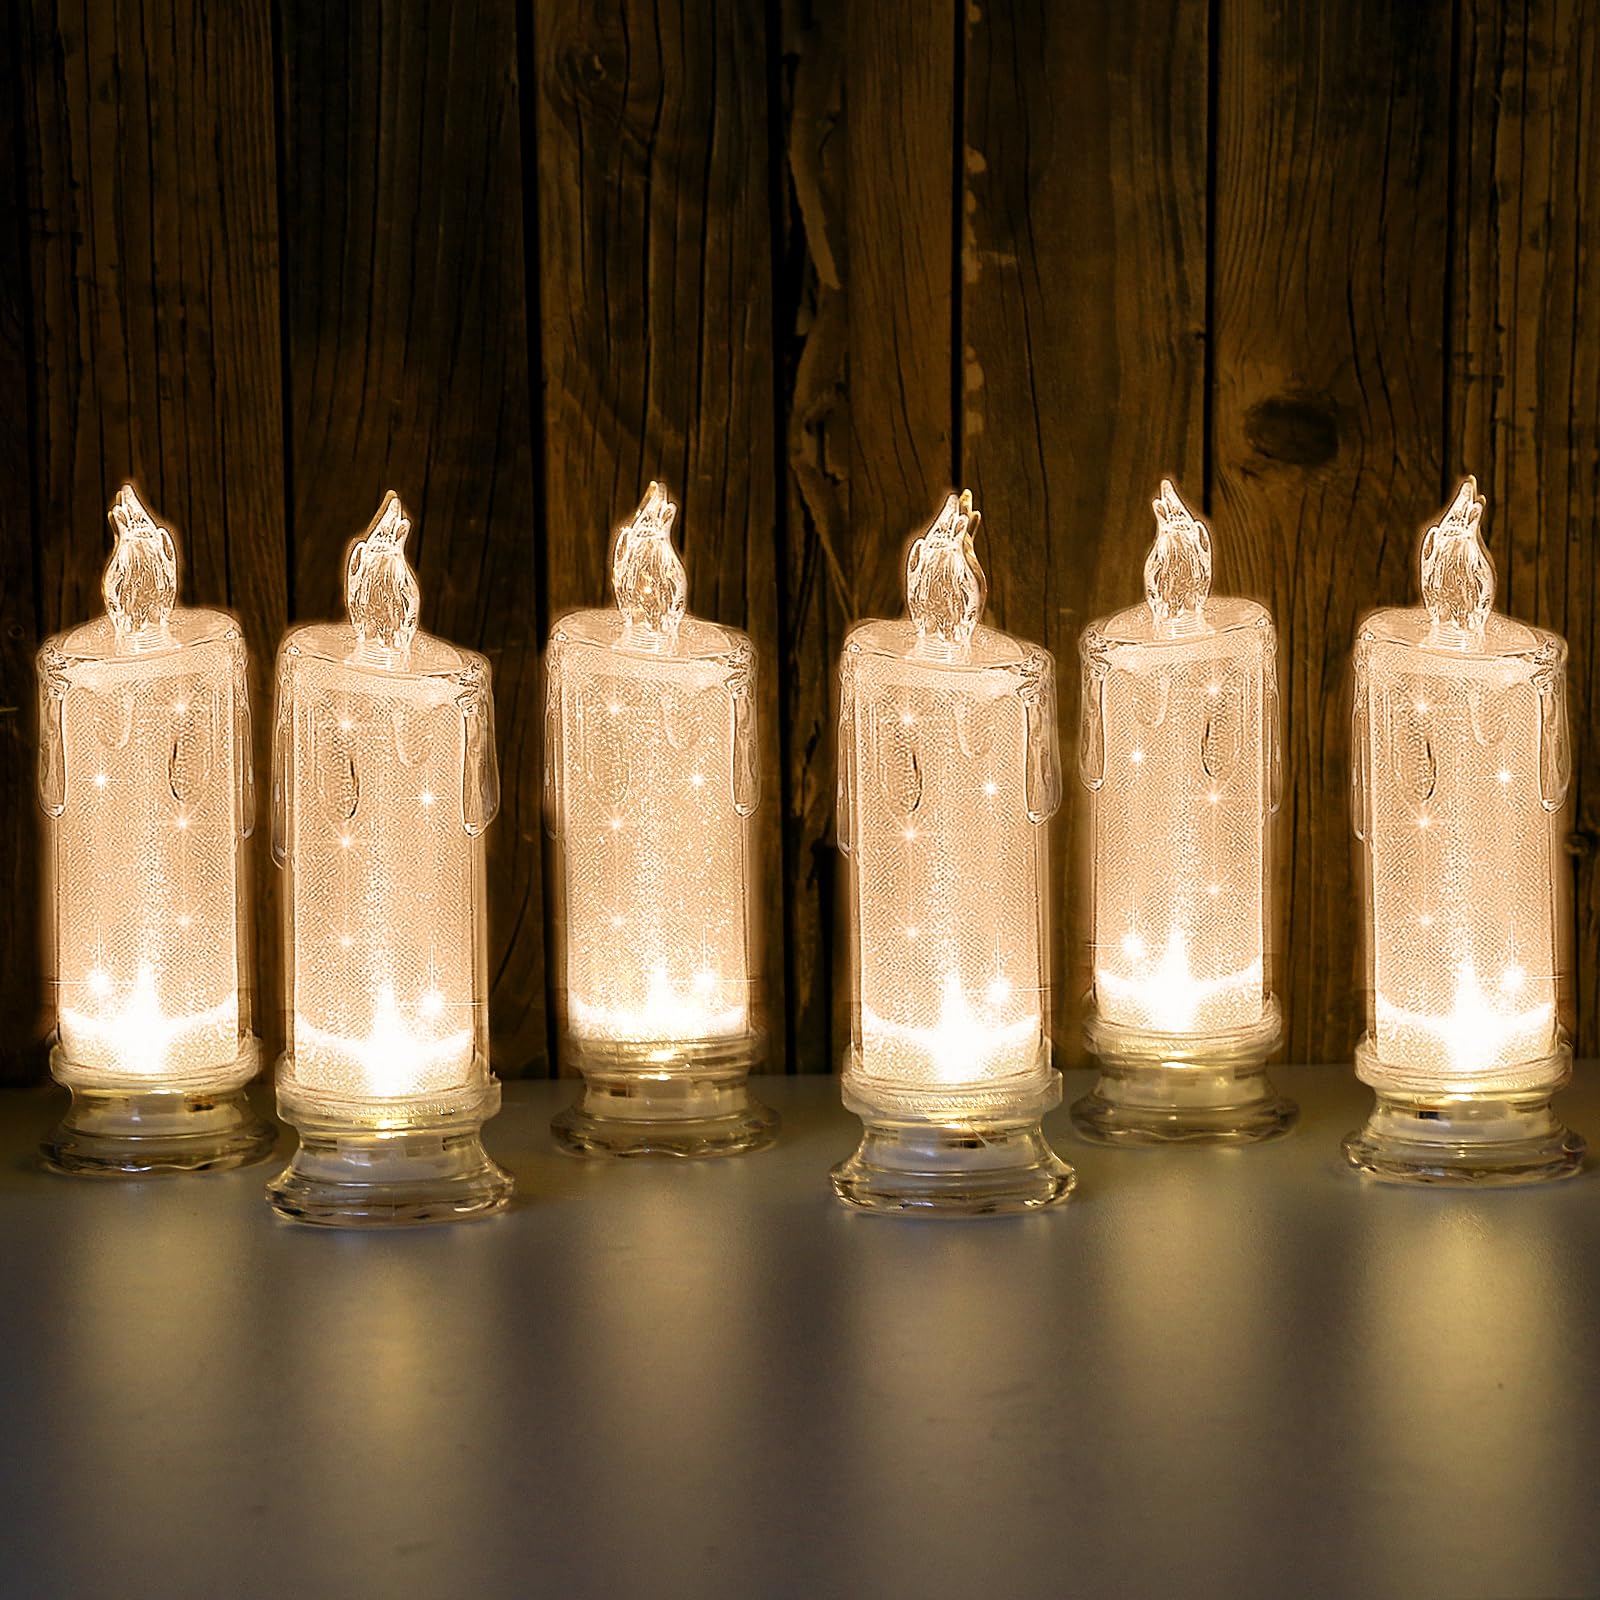 LACGO Flammenlose LED-Kerzen – flackernde dekorative Stumpenkerzen, batteriebetriebene Kerzen mit warmweißem Licht für Weihnachten, Hochzeit, Geburtstag, Valentinstag, Muttertag, Geschenk, 6 Stück